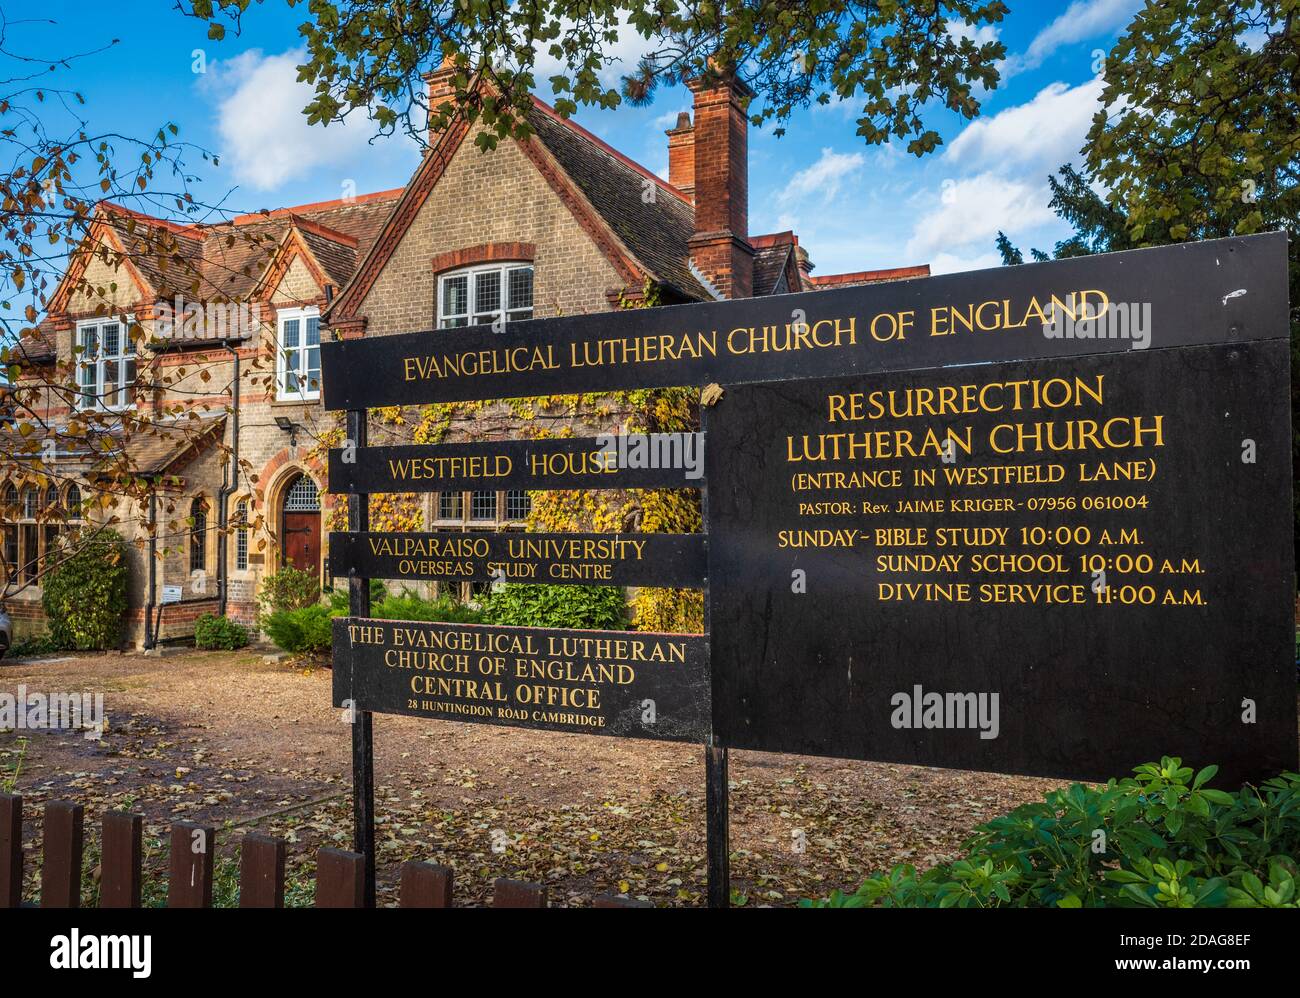 Église luthérienne évangélique d'Angleterre (ELCE) Westfield House, 28 Huntingdon Road, Cambridge, a fondé 1896, un synode luthérien confessionnel au Royaume-Uni. Banque D'Images